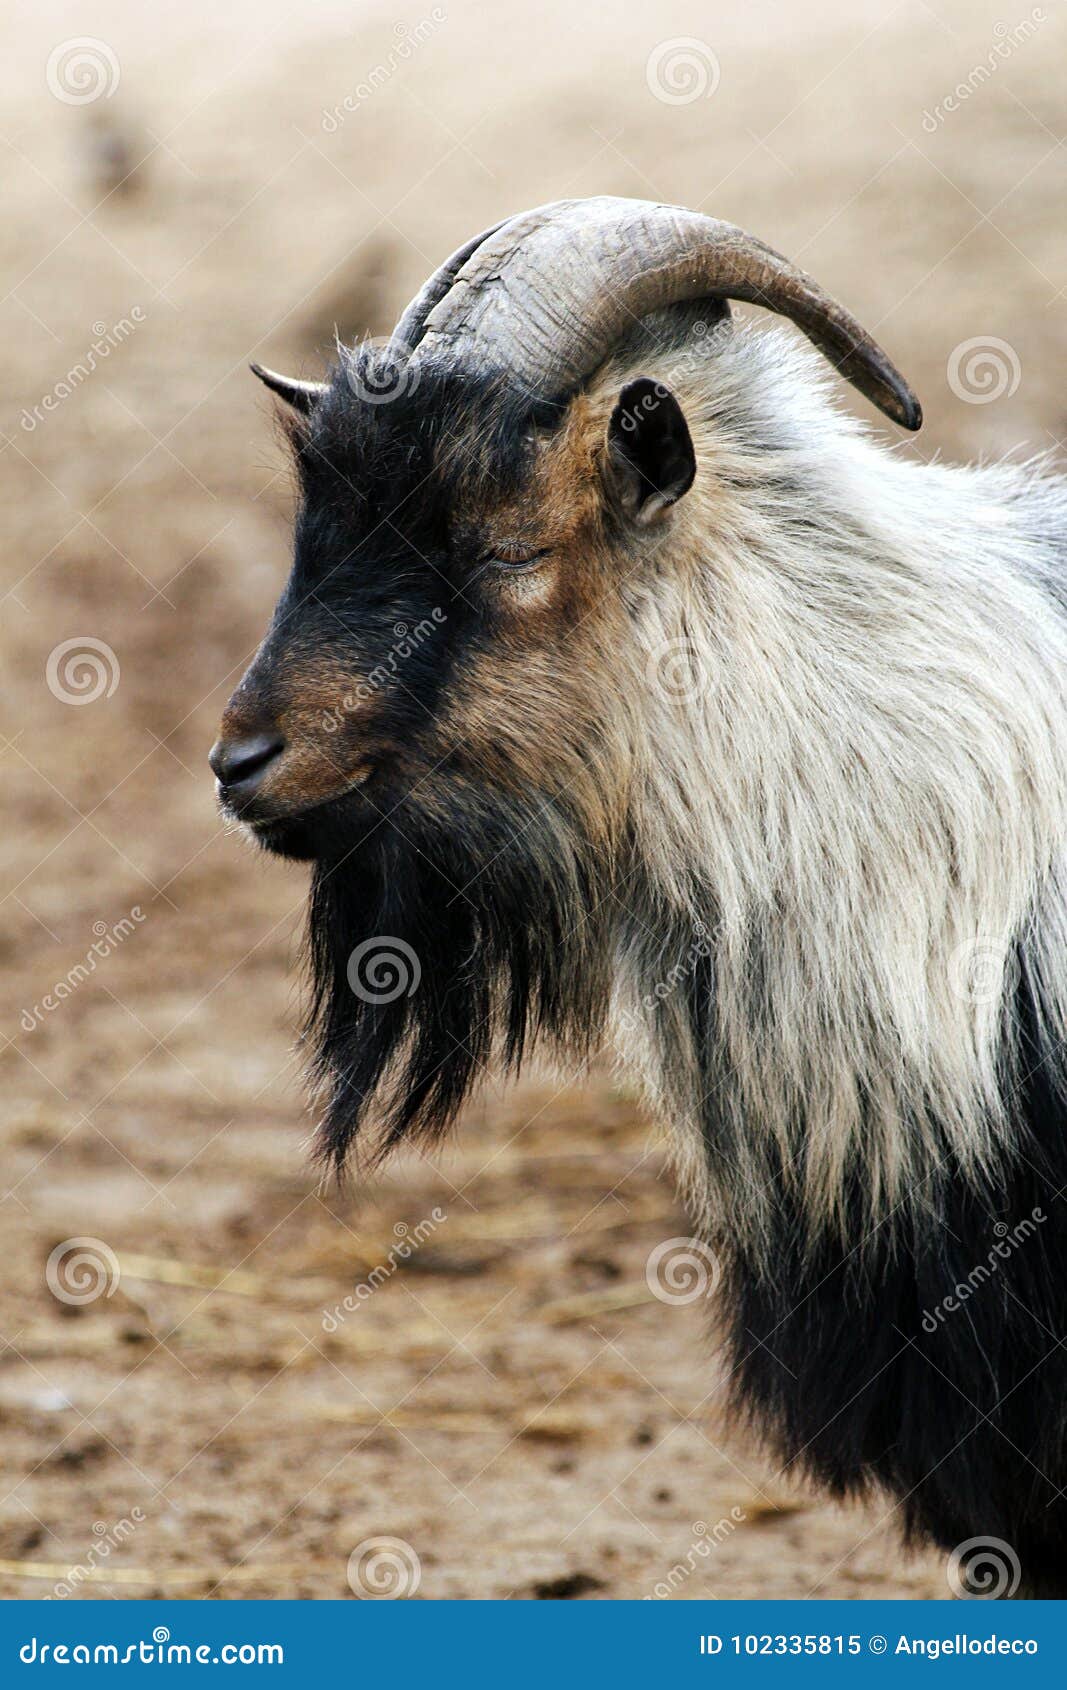 african dwarf goat. capra aegagrus hircus